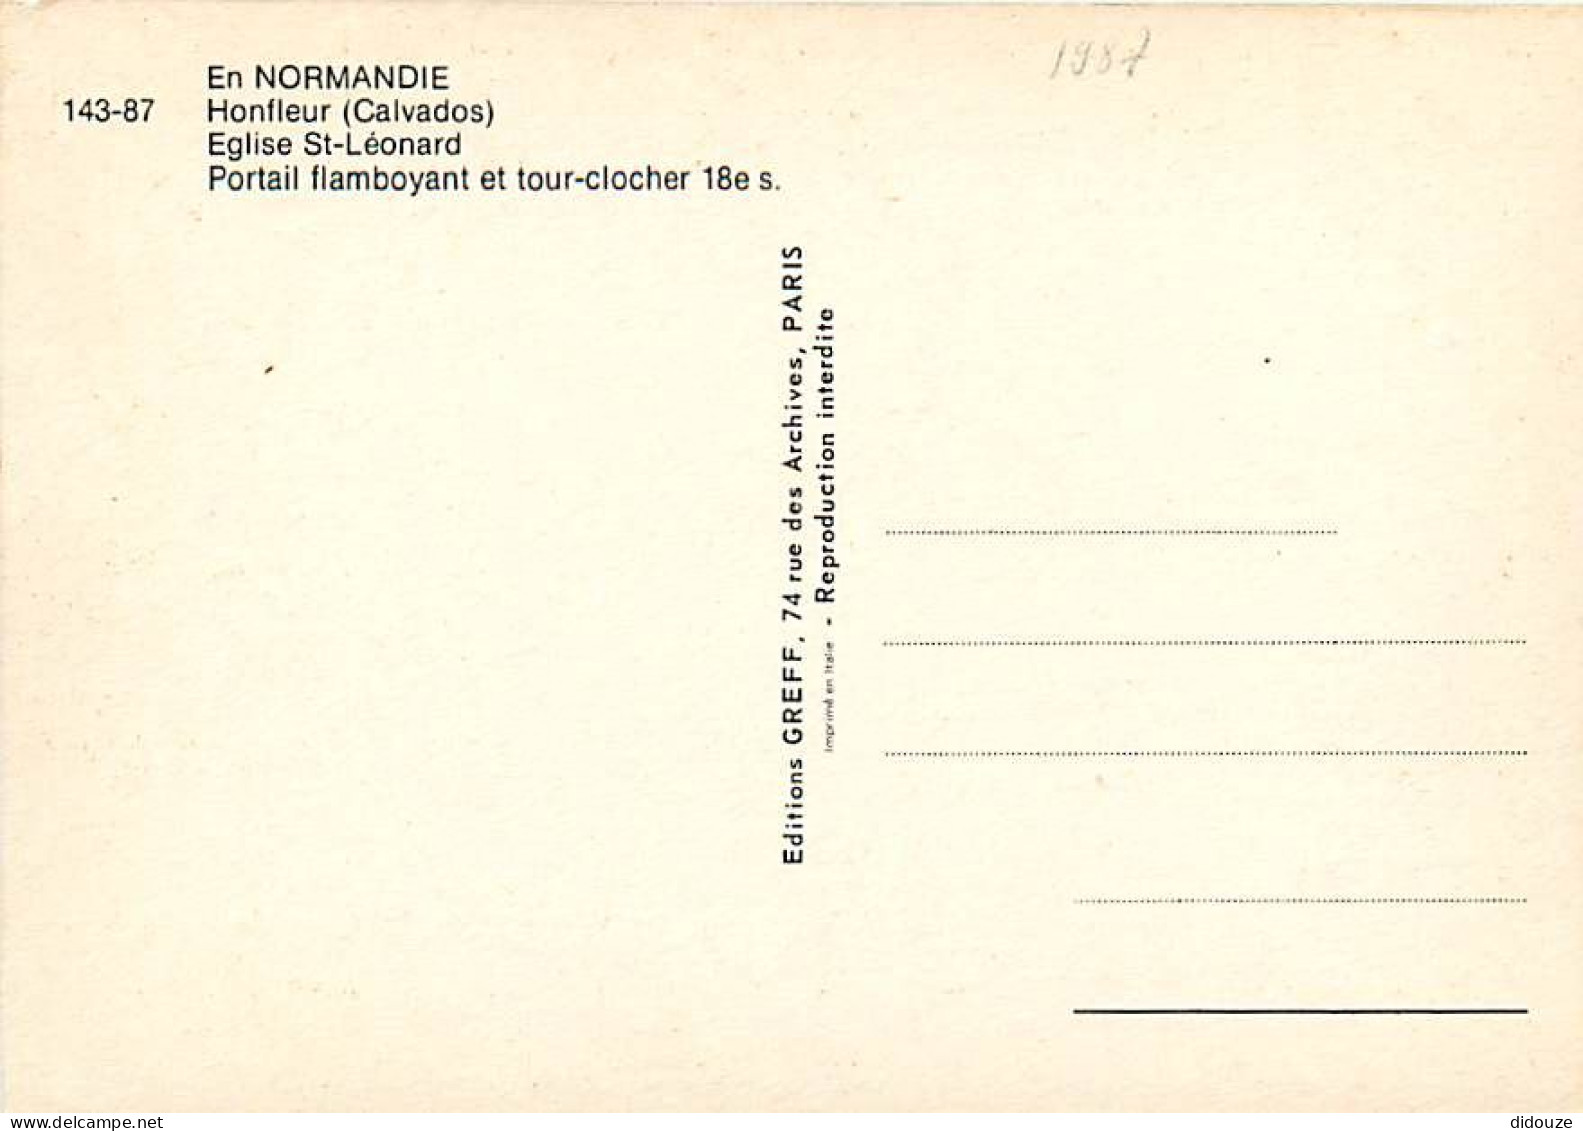 14 - Honfleur - Eglise St-Léonard - Portail Flamboyant Et Tour-clocher 18e S. - Automobiles - Carte Neuve - CPM - Voir S - Honfleur